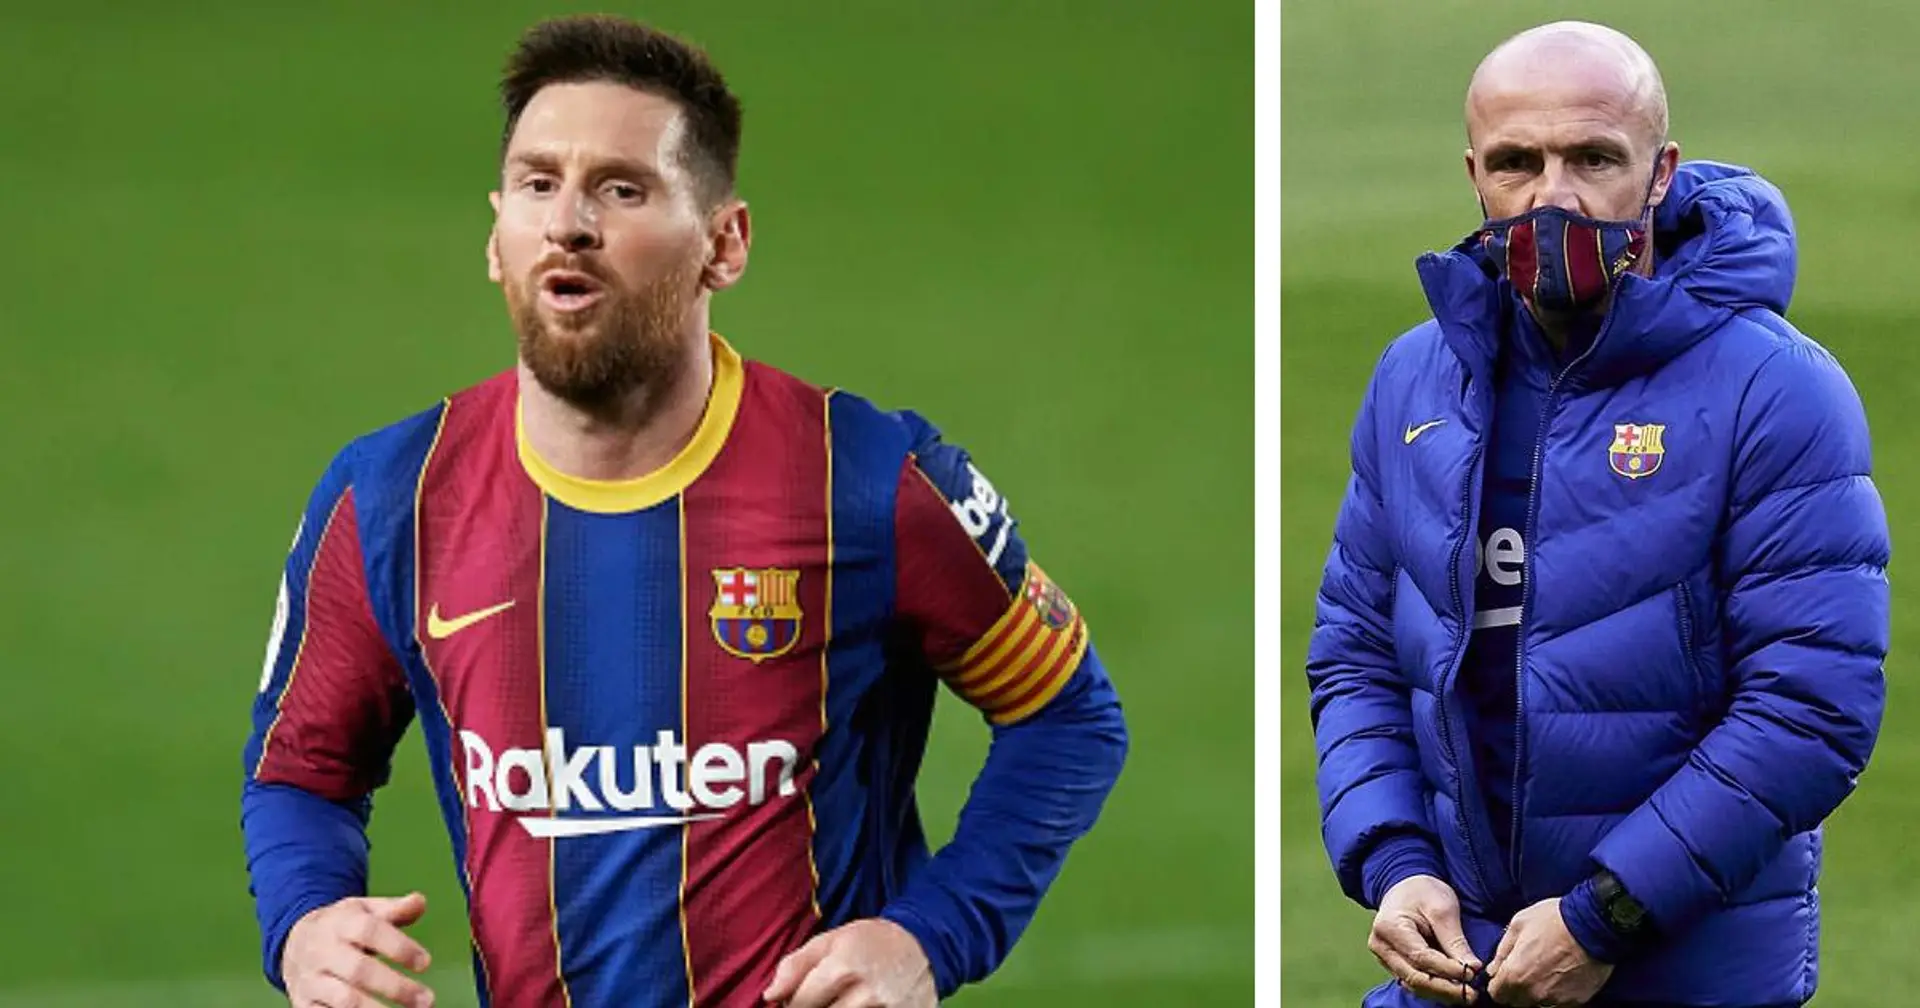 "Il a expliqué les choses à Piqué": L'assistant coach Schreuder sur la perspicacité tactique de Messi